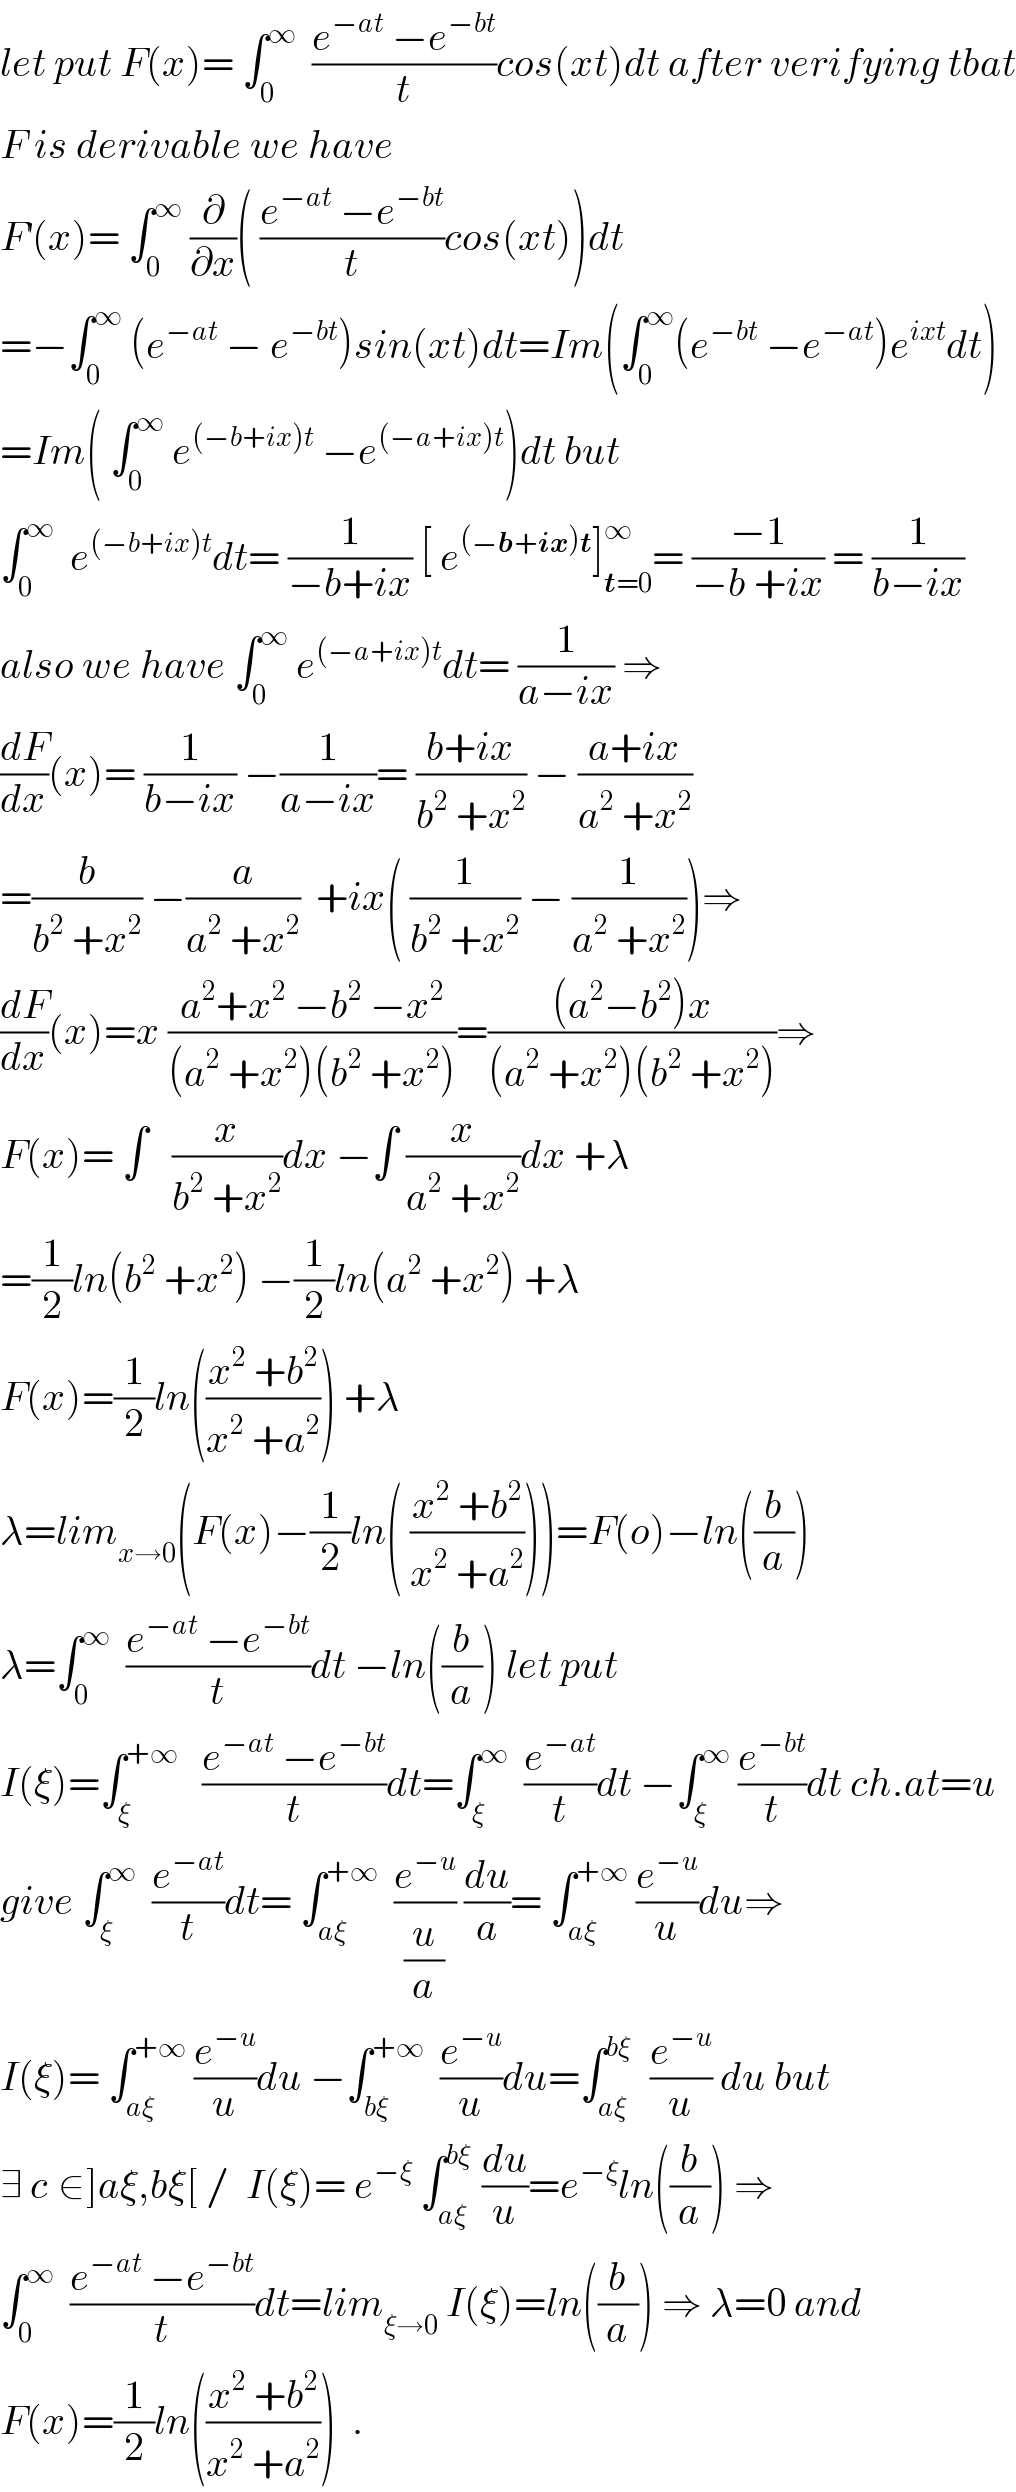 let put F(x)= ∫_0 ^∞   ((e^(−at)  −e^(−bt) )/t)cos(xt)dt after verifying tbat  F is derivable we have  F^′ (x)= ∫_0 ^∞  (∂/∂x)( ((e^(−at)  −e^(−bt) )/t)cos(xt))dt  =−∫_0 ^∞  (e^(−at)  − e^(−bt) )sin(xt)dt=Im(∫_0 ^∞ (e^(−bt)  −e^(−at) )e^(ixt) dt)  =Im( ∫_0 ^∞  e^((−b+ix)t)  −e^((−a+ix)t) )dt but  ∫_0 ^∞   e^((−b+ix)t) dt= (1/(−b+ix)) [ e^((−b+ix)t) ]_(t=0) ^∞ = ((−1)/(−b +ix)) = (1/(b−ix))  also we have ∫_0 ^∞  e^((−a+ix)t) dt= (1/(a−ix)) ⇒  (dF/dx)(x)= (1/(b−ix)) −(1/(a−ix))= ((b+ix)/(b^2  +x^2 )) − ((a+ix)/(a^2  +x^2 ))  =(b/(b^2  +x^2 )) −(a/(a^2  +x^2 ))  +ix( (1/(b^2  +x^2 )) − (1/(a^2  +x^2 )))⇒  (dF/dx)(x)=x ((a^2 +x^2  −b^2  −x^2 )/((a^2  +x^2 )(b^2  +x^2 )))=(((a^2 −b^2 )x)/((a^2  +x^2 )(b^2  +x^2 )))⇒  F(x)= ∫   (x/(b^2  +x^2 ))dx −∫ (x/(a^2  +x^2 ))dx +λ  =(1/2)ln(b^2  +x^2 ) −(1/2)ln(a^2  +x^2 ) +λ  F(x)=(1/2)ln(((x^2  +b^2 )/(x^2  +a^2 ))) +λ  λ=lim_(x→0) (F(x)−(1/2)ln( ((x^2  +b^2 )/(x^2  +a^2 ))))=F(o)−ln((b/a))  λ=∫_0 ^∞   ((e^(−at)  −e^(−bt) )/t)dt −ln((b/a)) let put  I(ξ)=∫_ξ ^(+∞)    ((e^(−at)  −e^(−bt) )/t)dt=∫_ξ ^∞   (e^(−at) /t)dt −∫_ξ ^∞  (e^(−bt) /t)dt ch.at=u  give ∫_ξ ^∞   (e^(−at) /t)dt= ∫_(aξ) ^(+∞)   (e^(−u) /(u/a)) (du/a)= ∫_(aξ) ^(+∞)  (e^(−u) /u)du⇒  I(ξ)= ∫_(aξ) ^(+∞)  (e^(−u) /u)du −∫_(bξ) ^(+∞)   (e^(−u) /u)du=∫_(aξ) ^(bξ)   (e^(−u) /u) du but  ∃ c_ ∈]aξ,bξ[ /  I(ξ)= e^(−ξ)  ∫_(aξ) ^(bξ)  (du/u)=e^(−ξ) ln((b/a)) ⇒  ∫_0 ^∞   ((e^(−at)  −e^(−bt) )/t)dt=lim_(ξ→0)  I(ξ)=ln((b/a)) ⇒ λ=0 and  F(x)=(1/2)ln(((x^2  +b^2 )/(x^2  +a^2 )))  .  